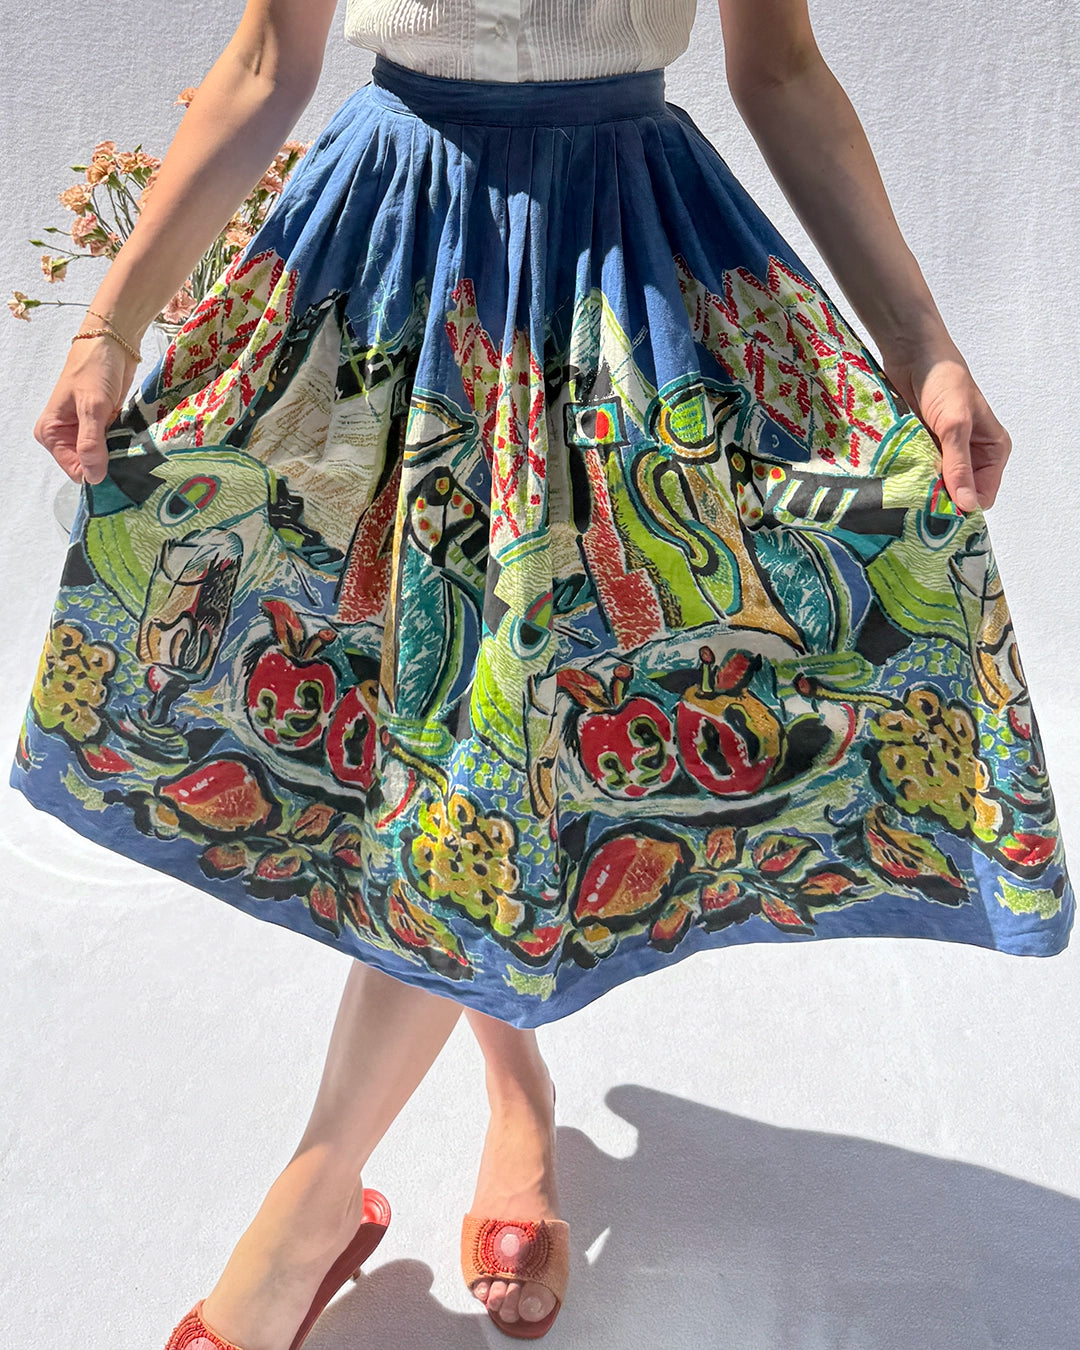 Vintage 1950s Novelty Painting Print Full Skirt